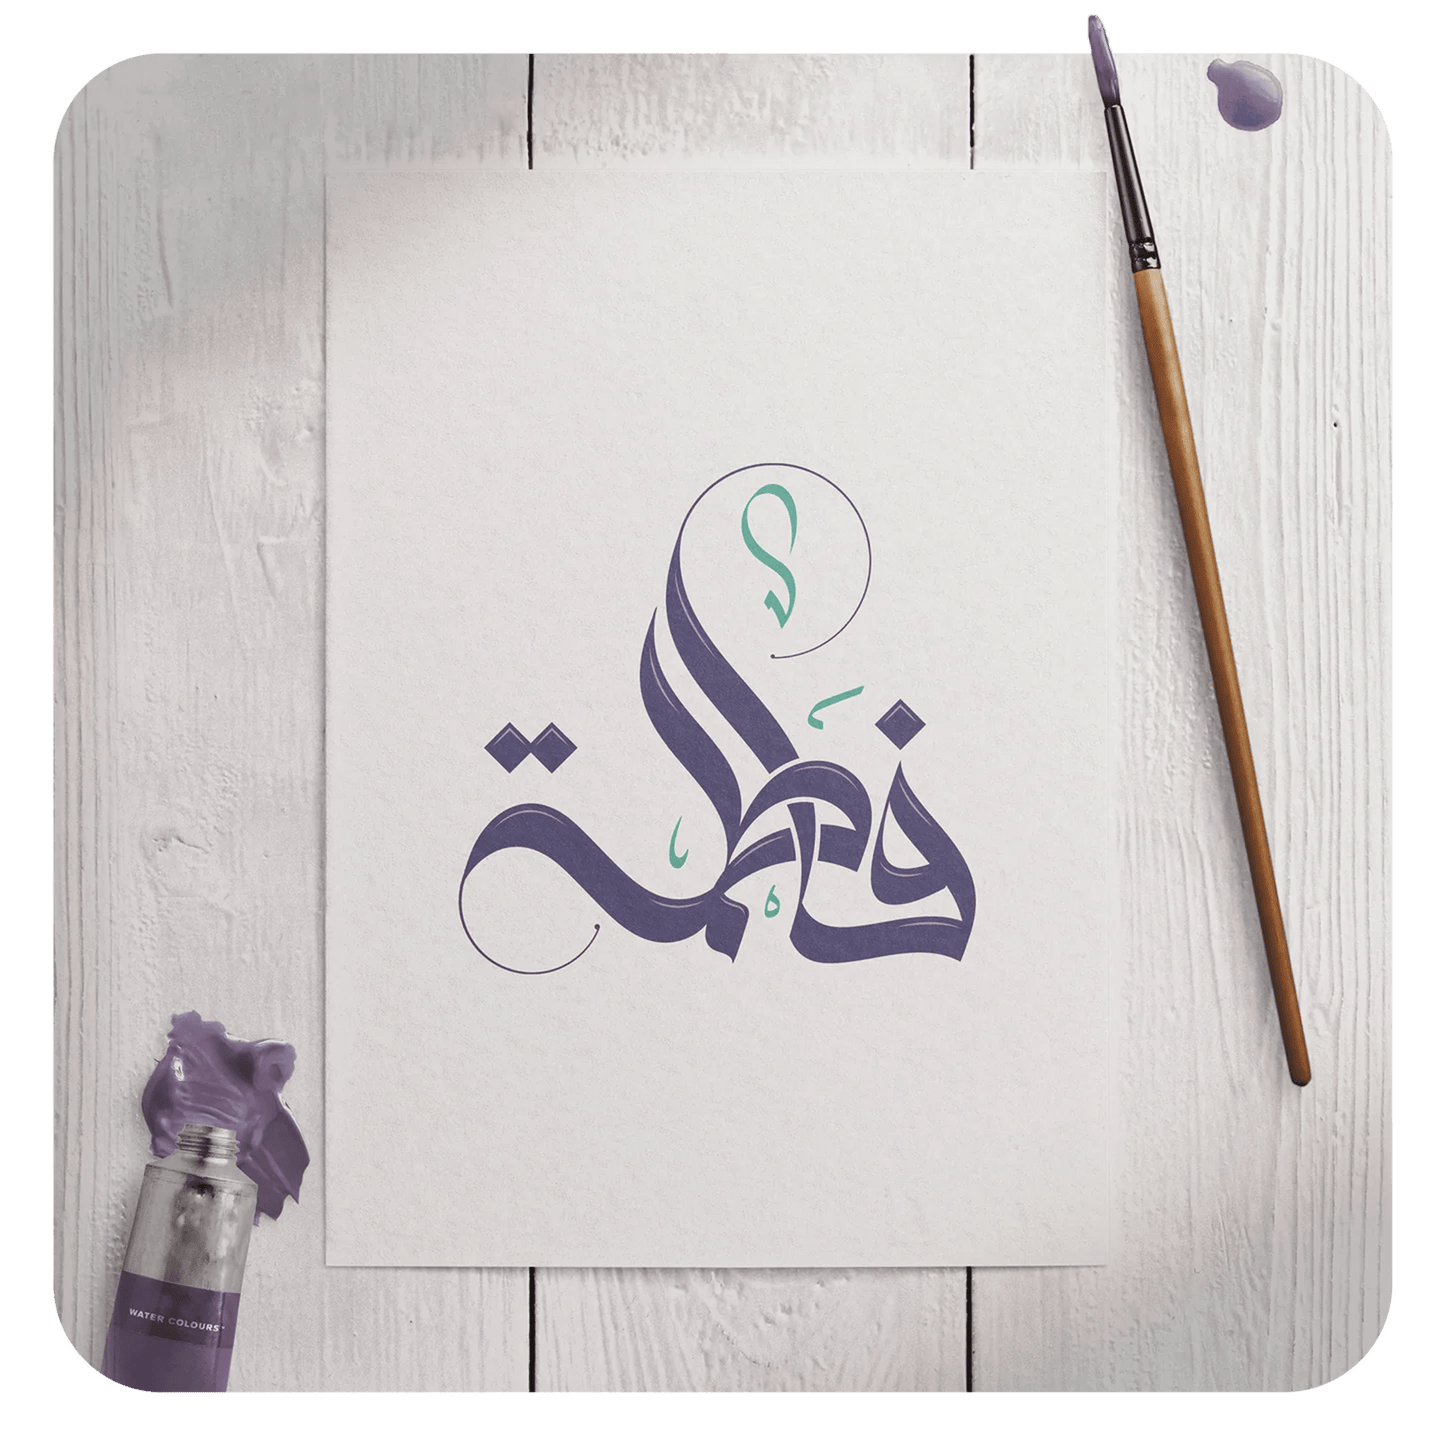 تصميم شعار بالخط العربي السنبلي